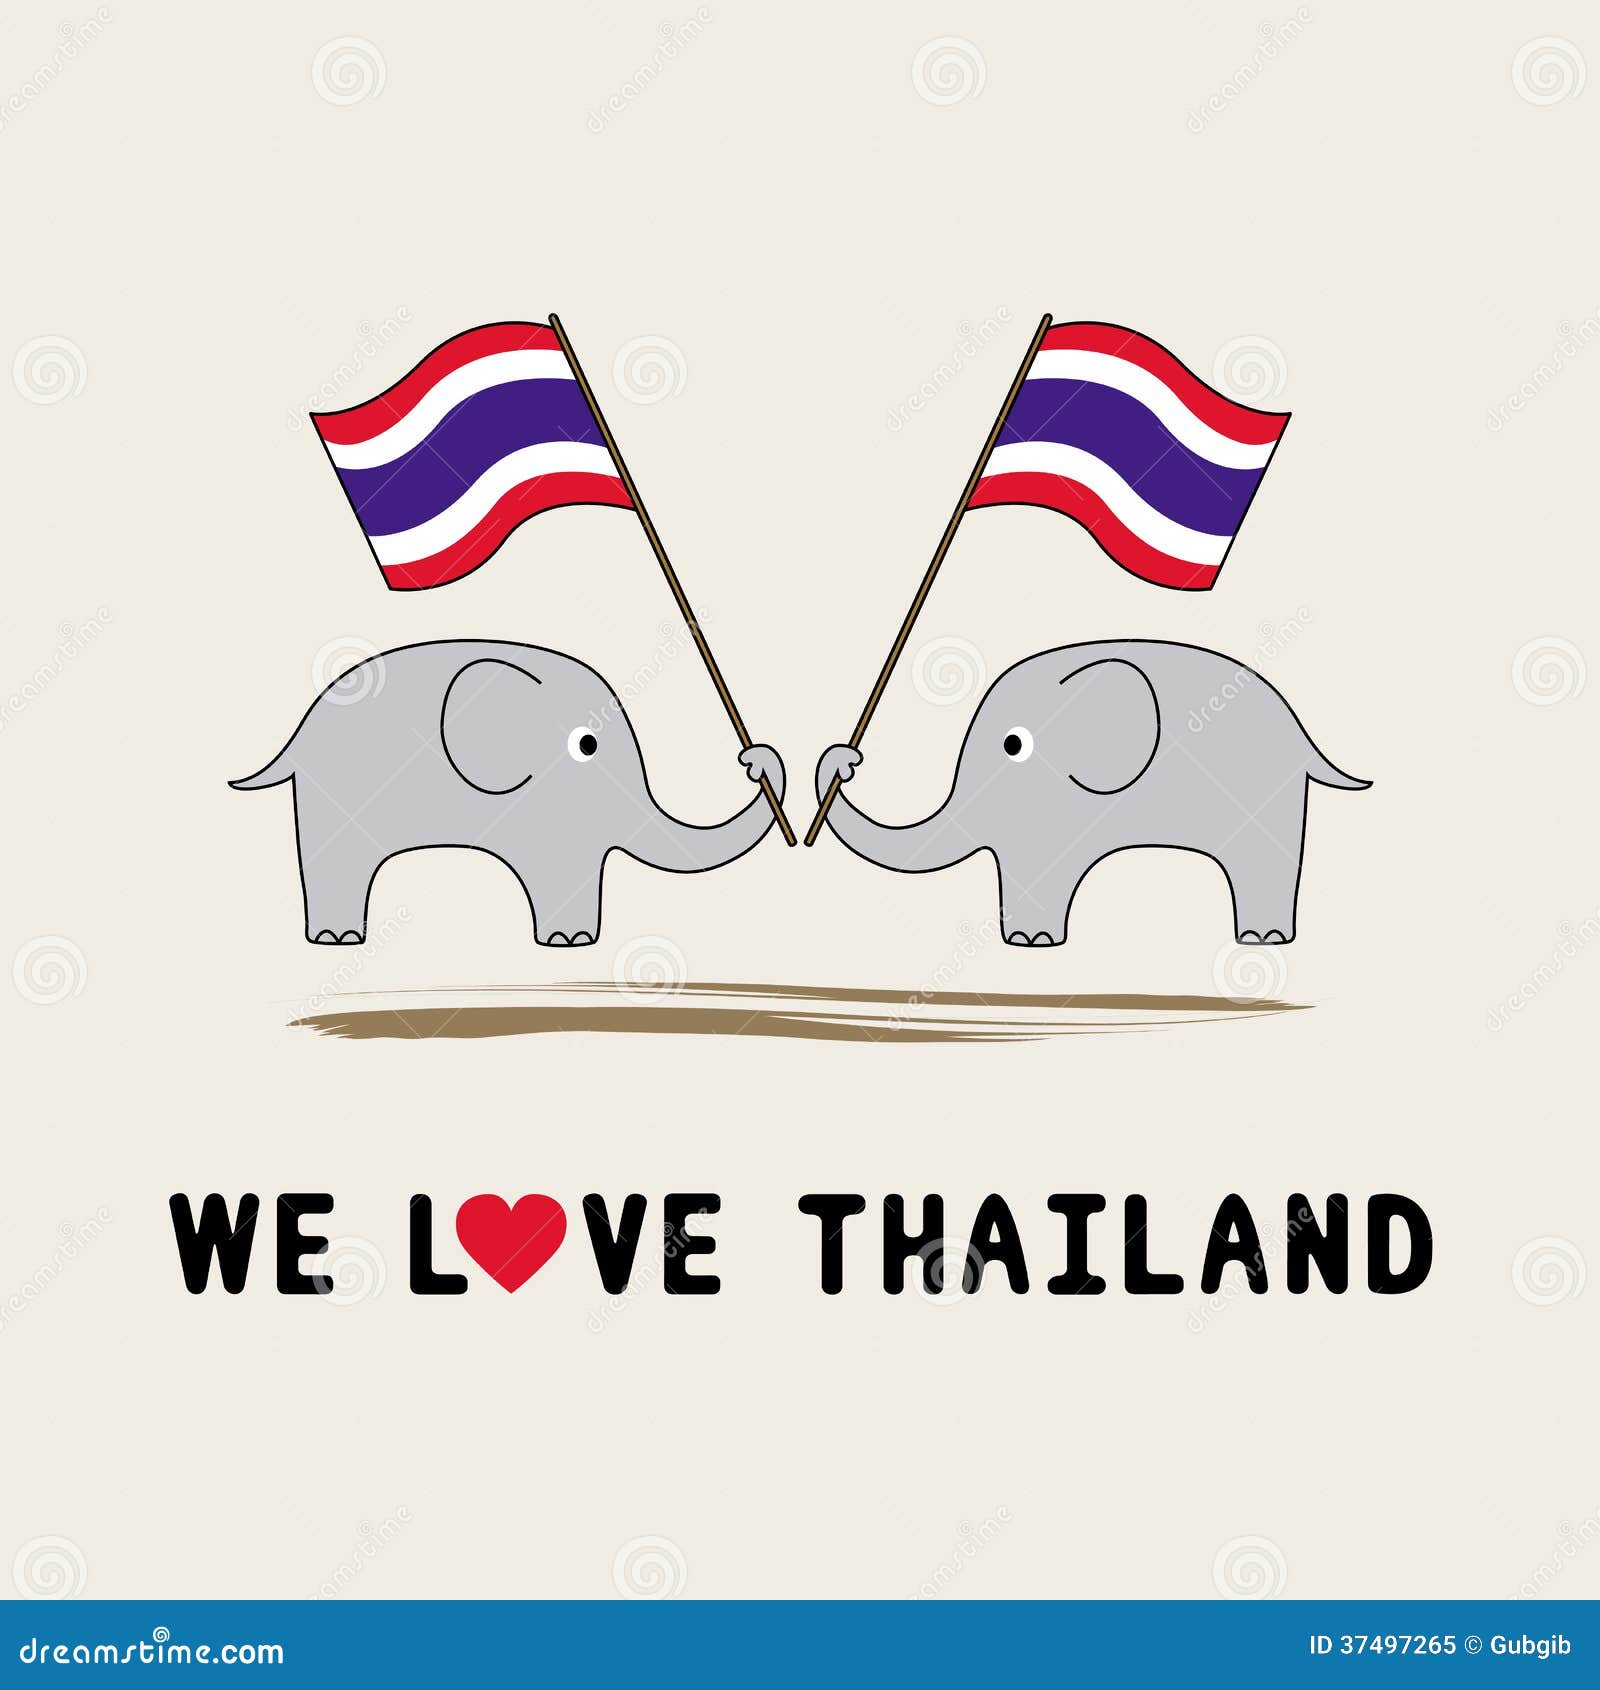 clipart thai cartoon - photo #44